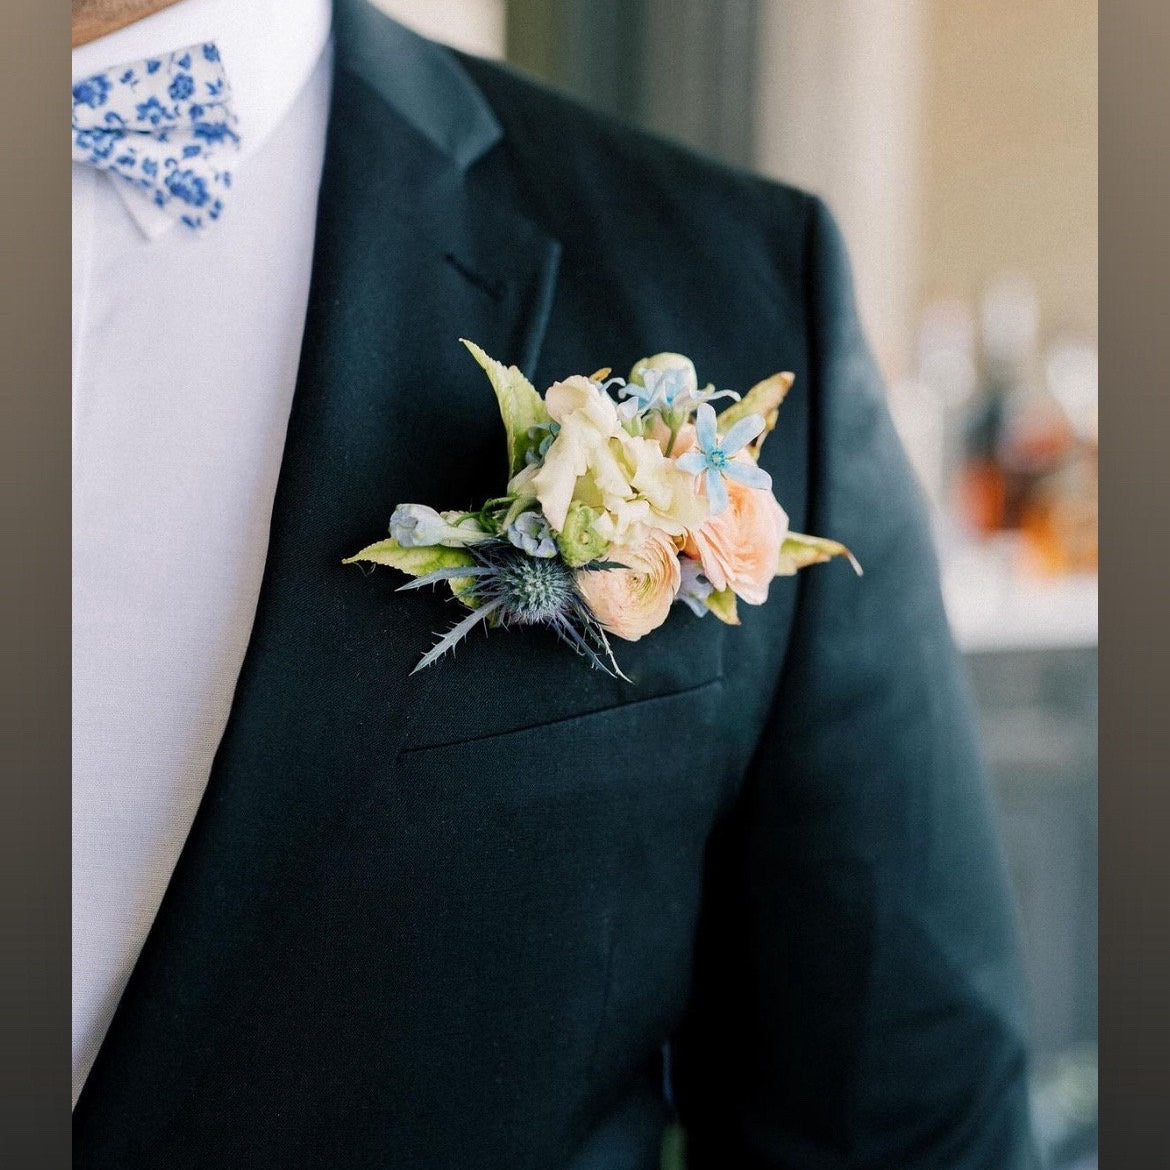 Floral Blue Necktie for Dusty Blue Wedding, Mens Floral Ties for Wedding Groomsmen Ties